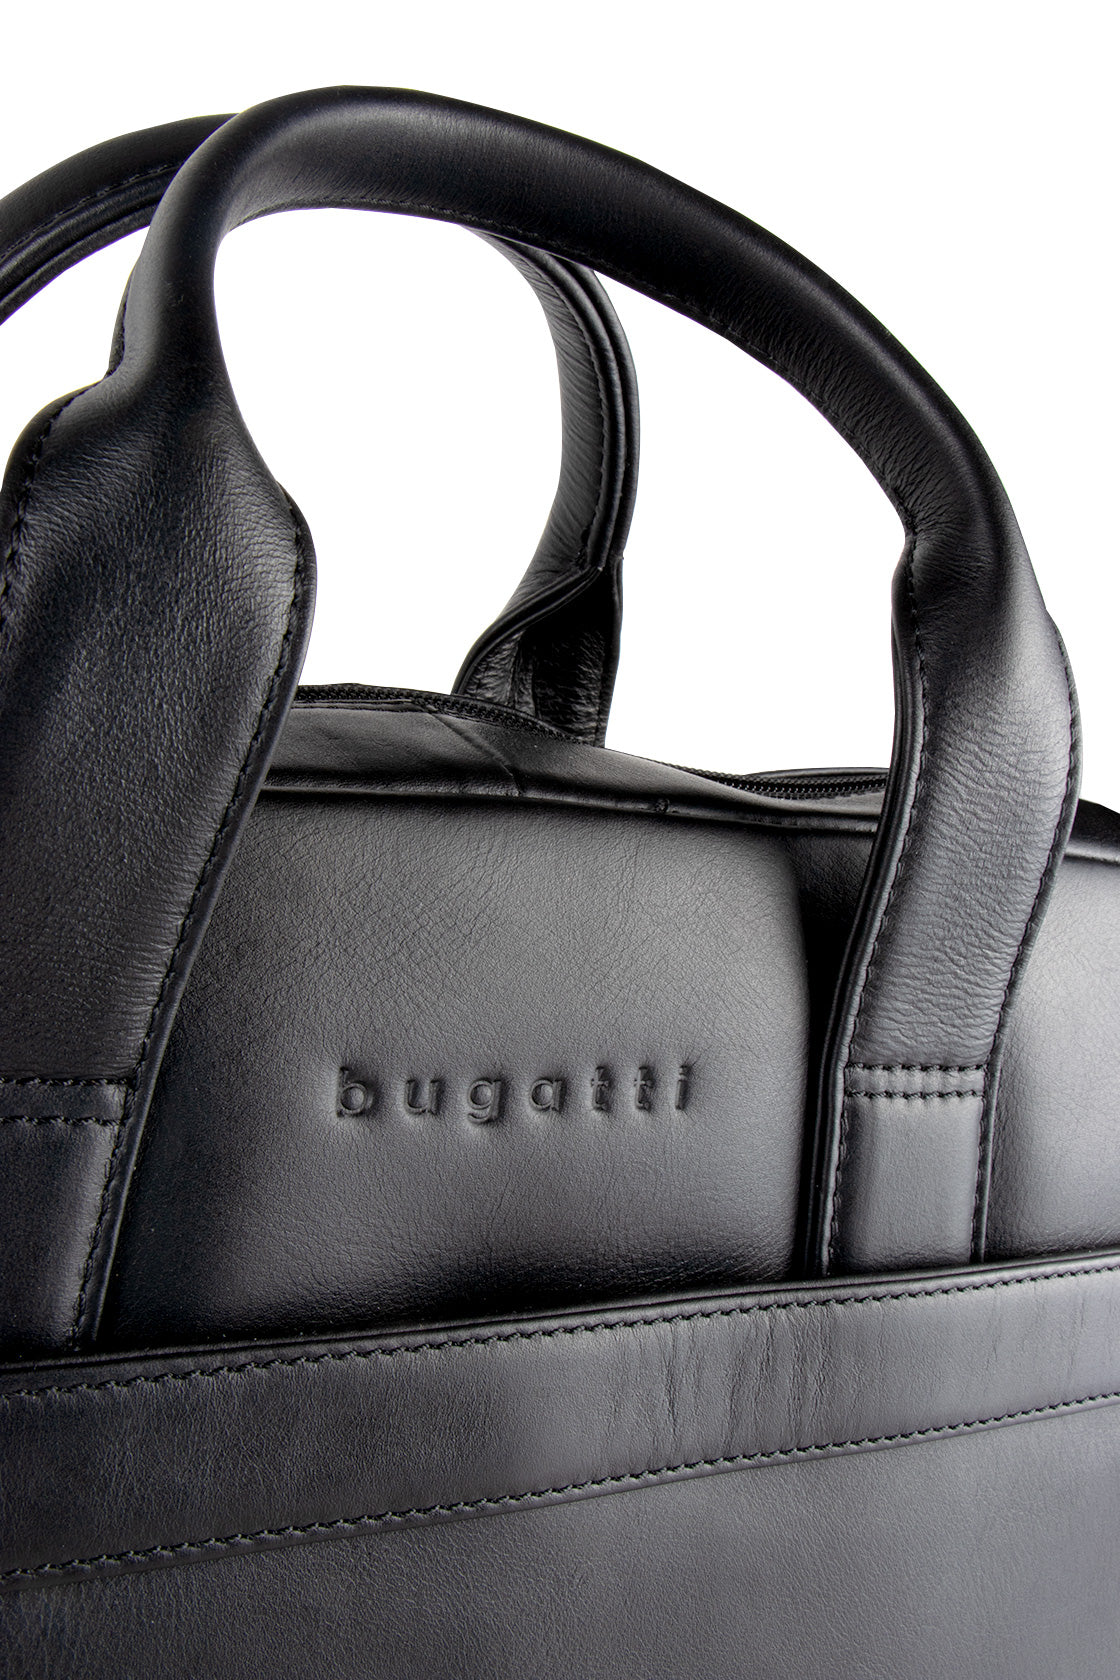 Bugatti Corso Briefcase Black